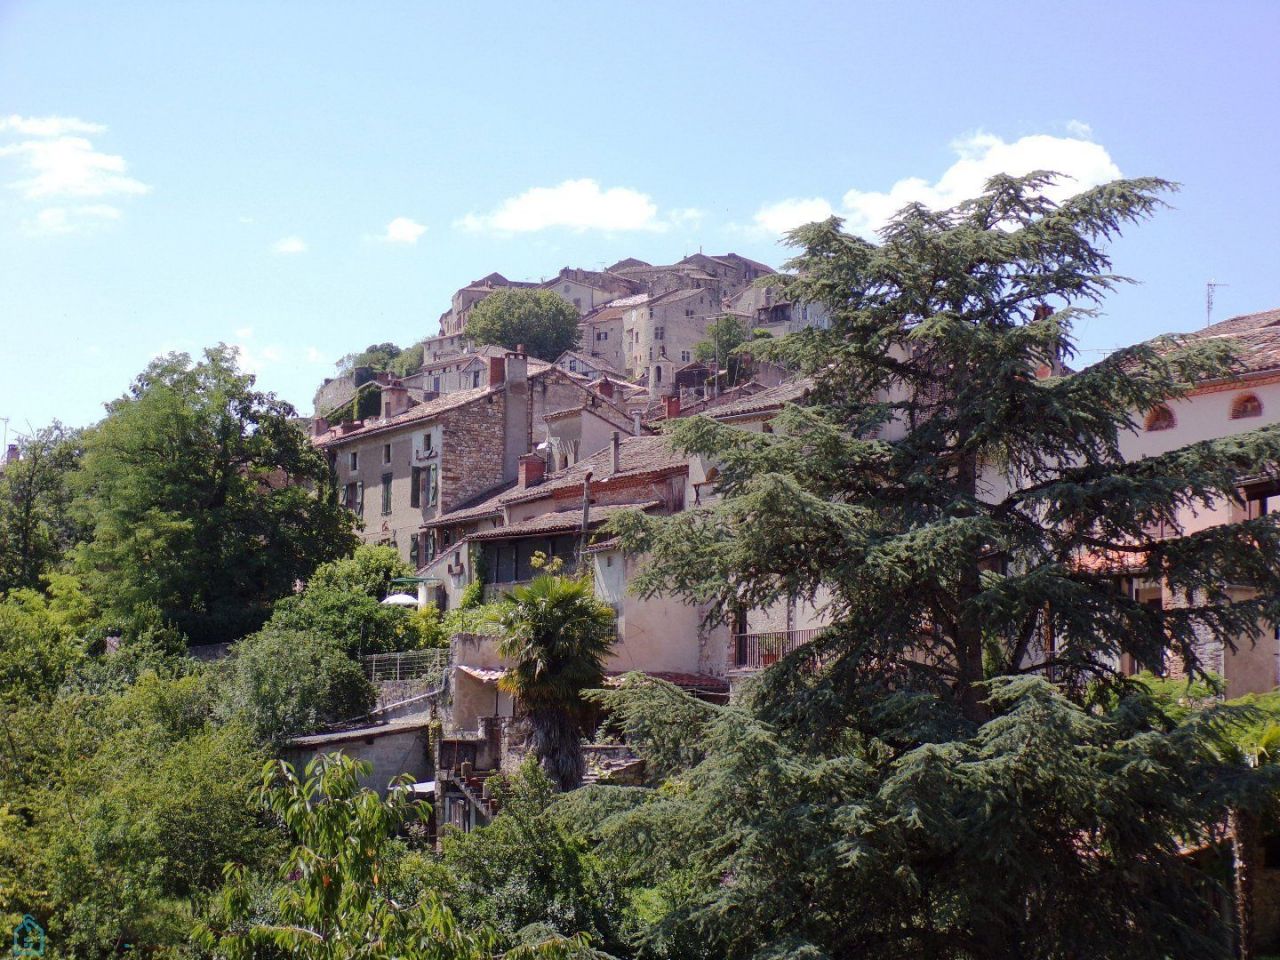 Maison en Languedoc-Roussillon, France - image 1